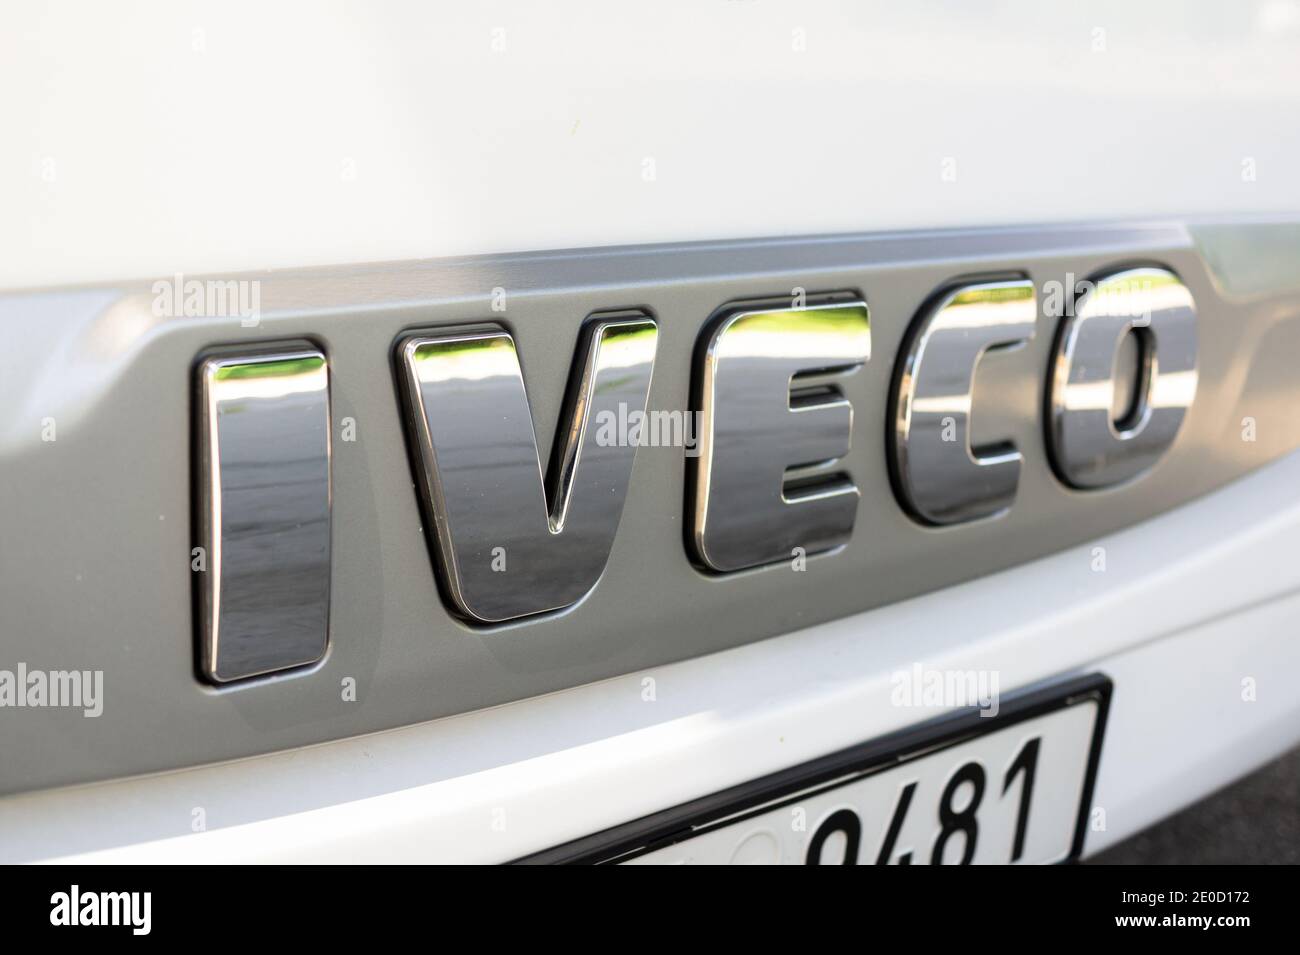 Hranice, República Checa - 23 de agosto de 2020: Logotipo de la Marca Iveco. Símbolo de la empresa que fabrica vehículos comerciales. Foto de stock